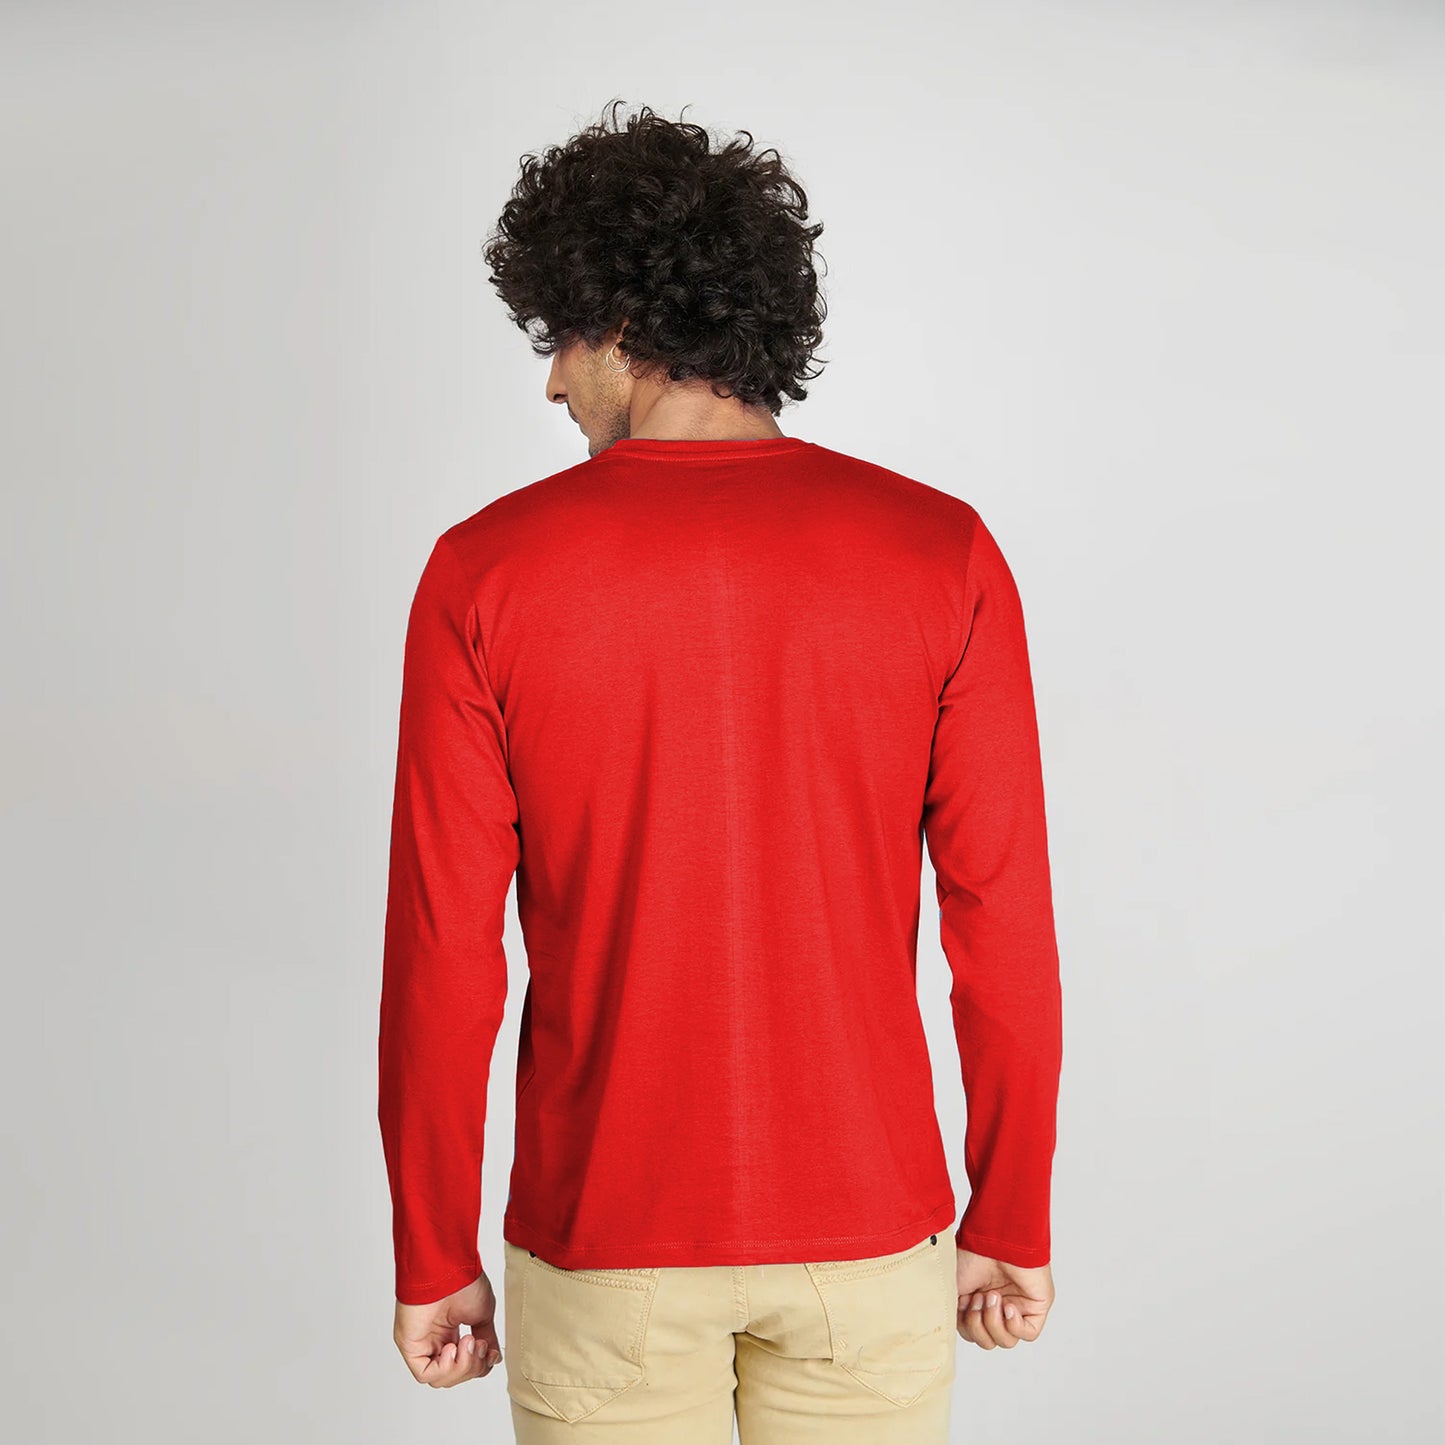 Basic Red Full Sleeves T-Shirt